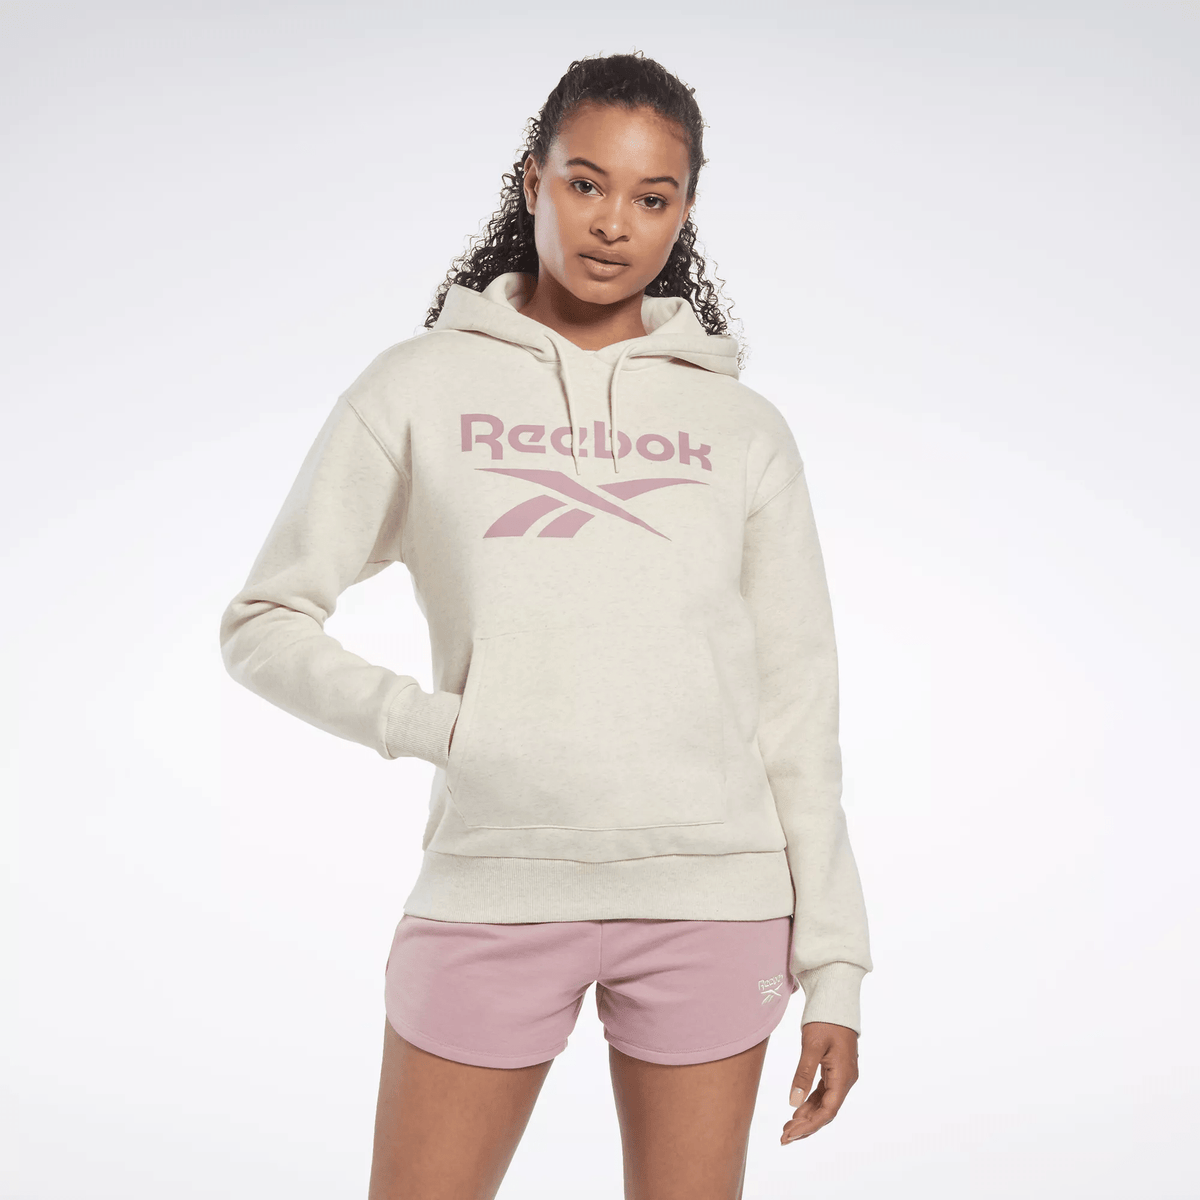 Reebok Women's Identity Logo Fleece Pullover Hoodie White